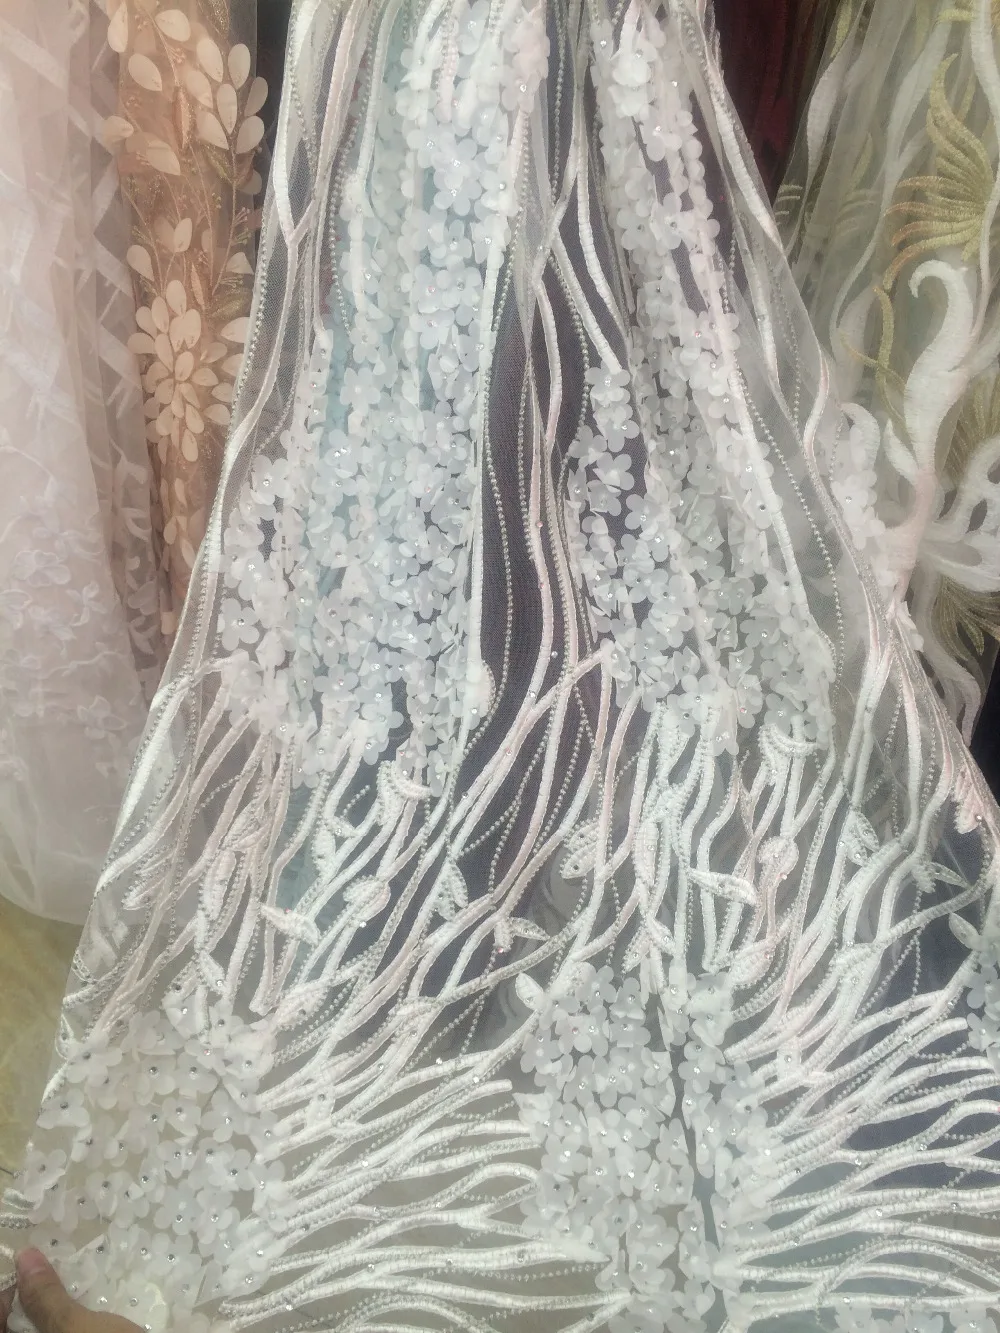 Наличии 5 ярдов Белый Новый модный показ сетка тюль вышивка кружевной ткани для свадьбы/вечернее платье/партии, компанией DHL